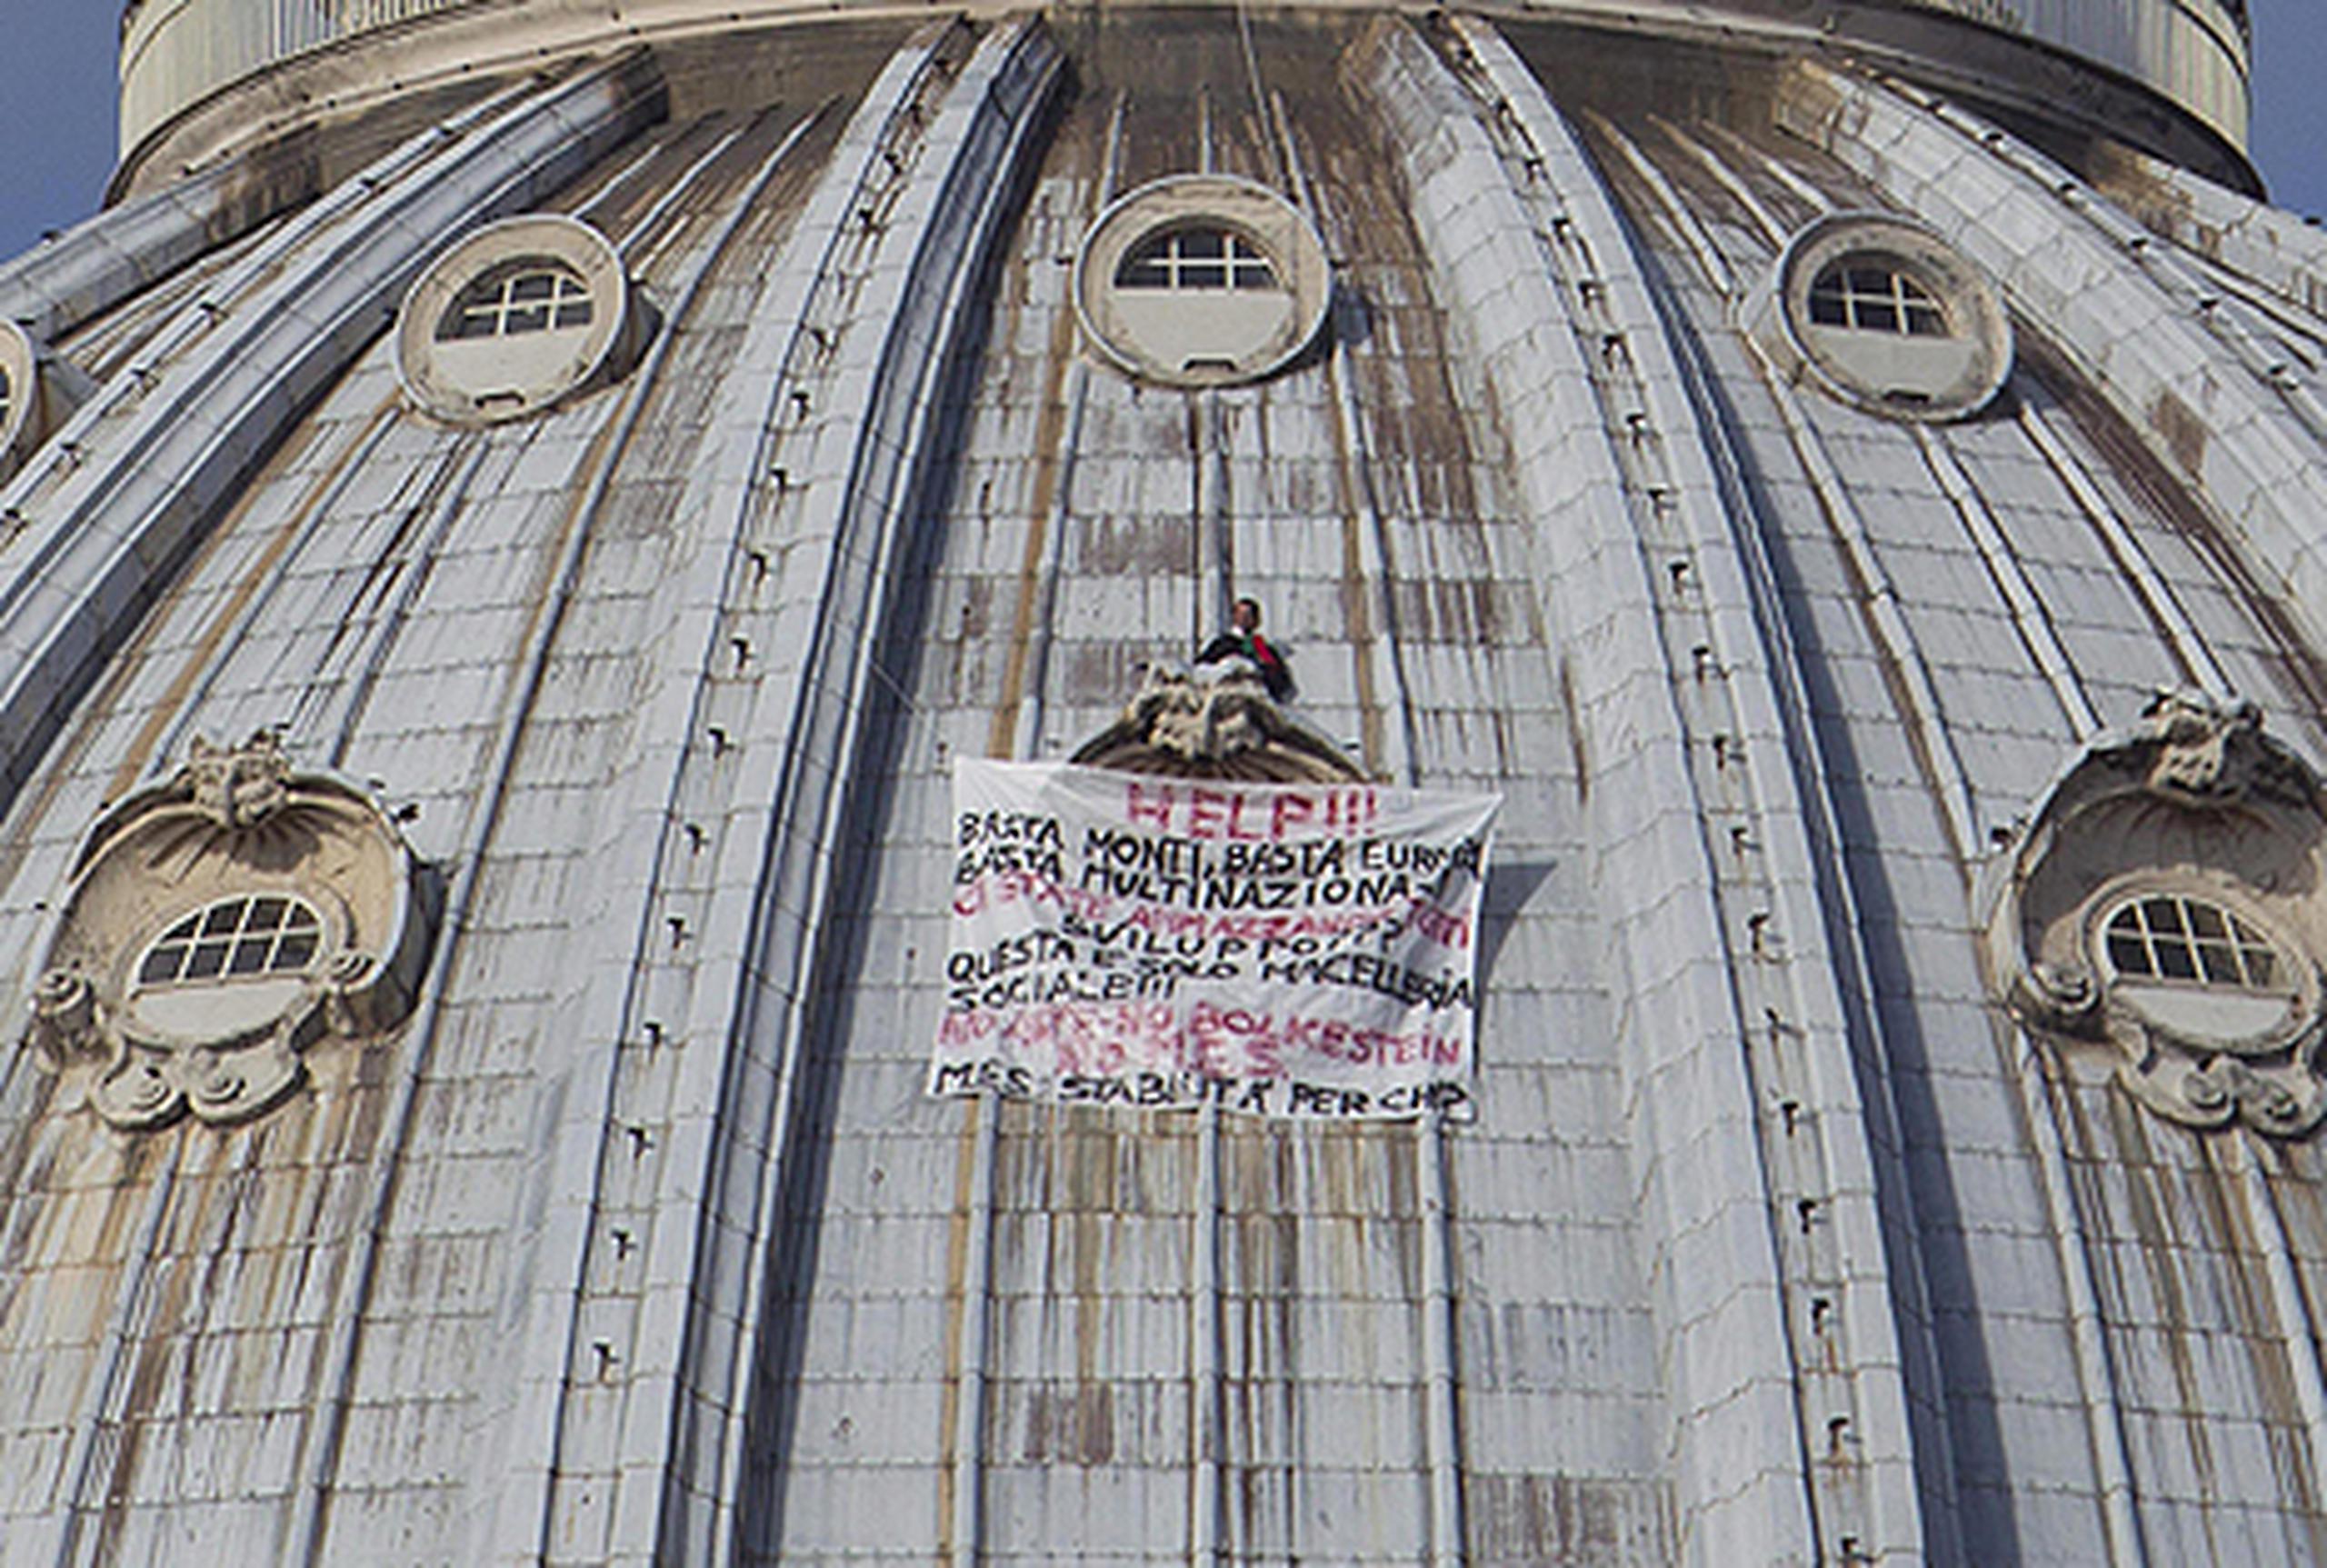 El italiano eludió la seguridad del Vaticano y escaló el domo de 42 pies. (Massimo Percossi / Agencia EFE)